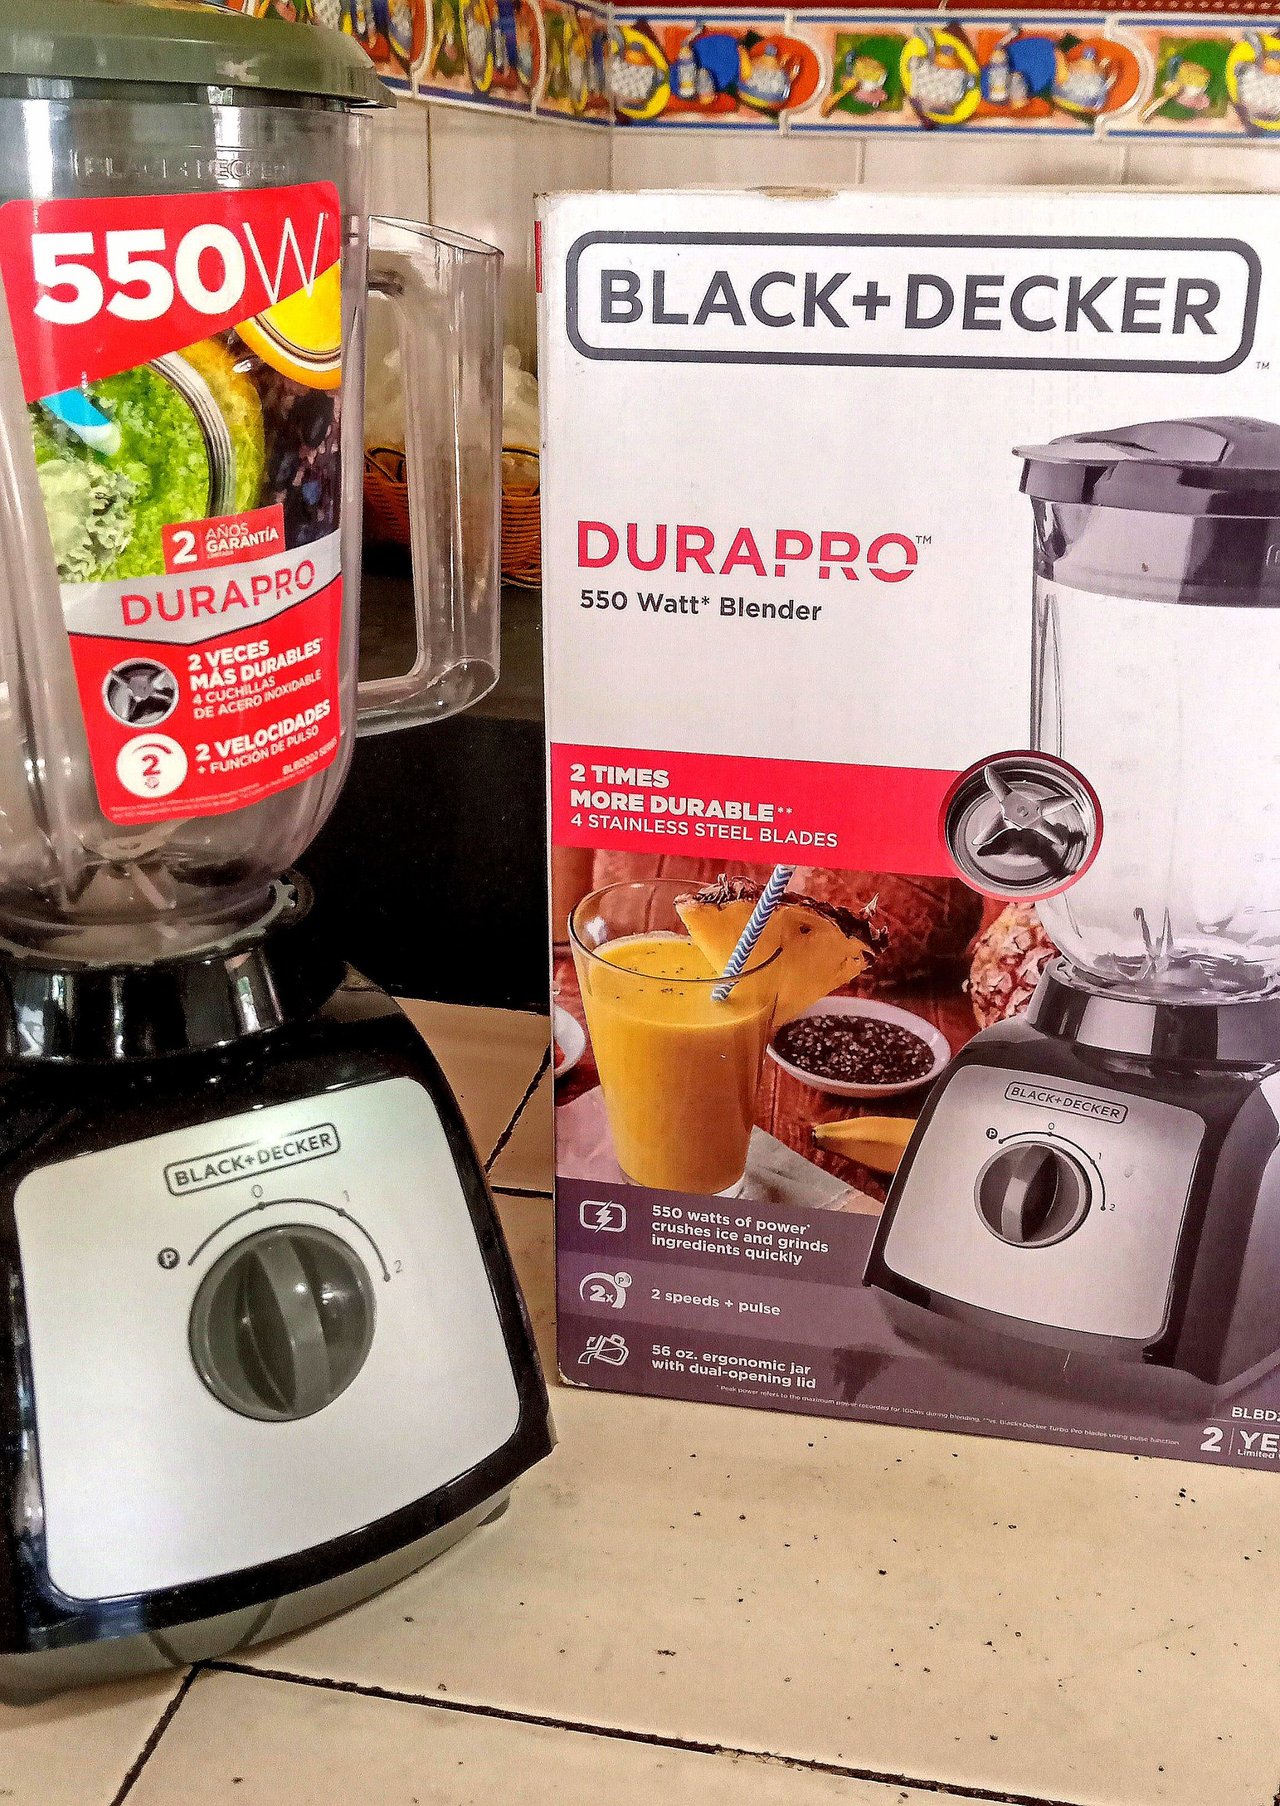 Black+Decker Blender DuraPro 550 Watt BLBD210GSS - ATBIZ